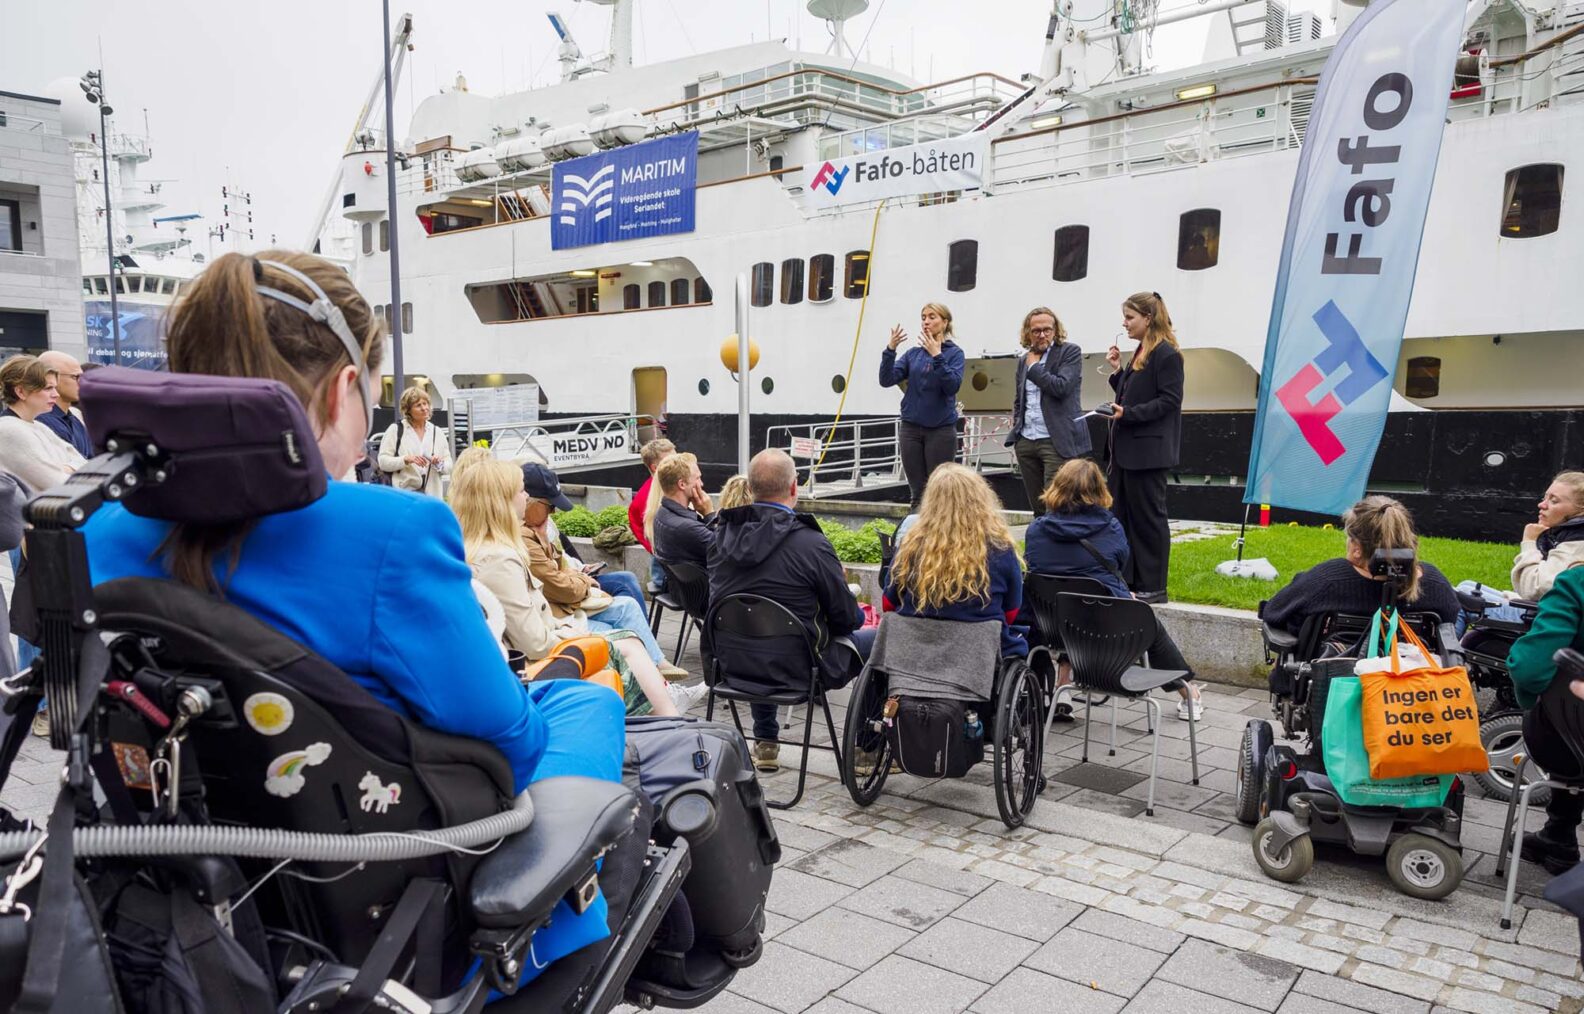 Bilde av møtet med rullestolbrukere i forgrunnen og båten i bakgrunnen.